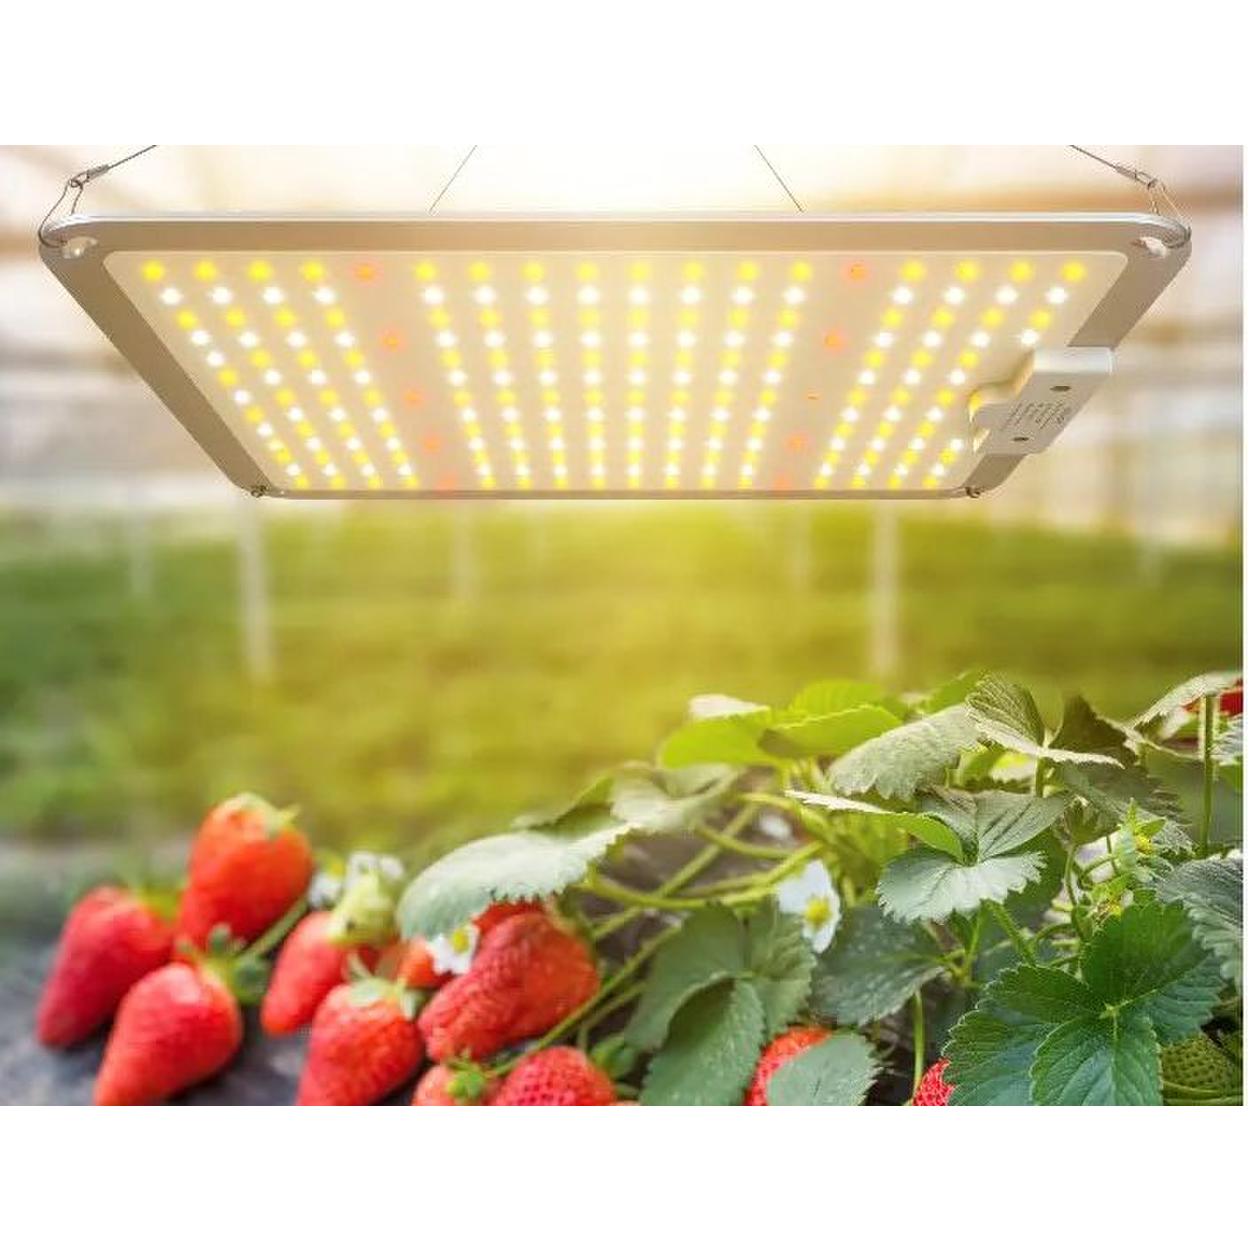 LED Grow Panel Lights 110W